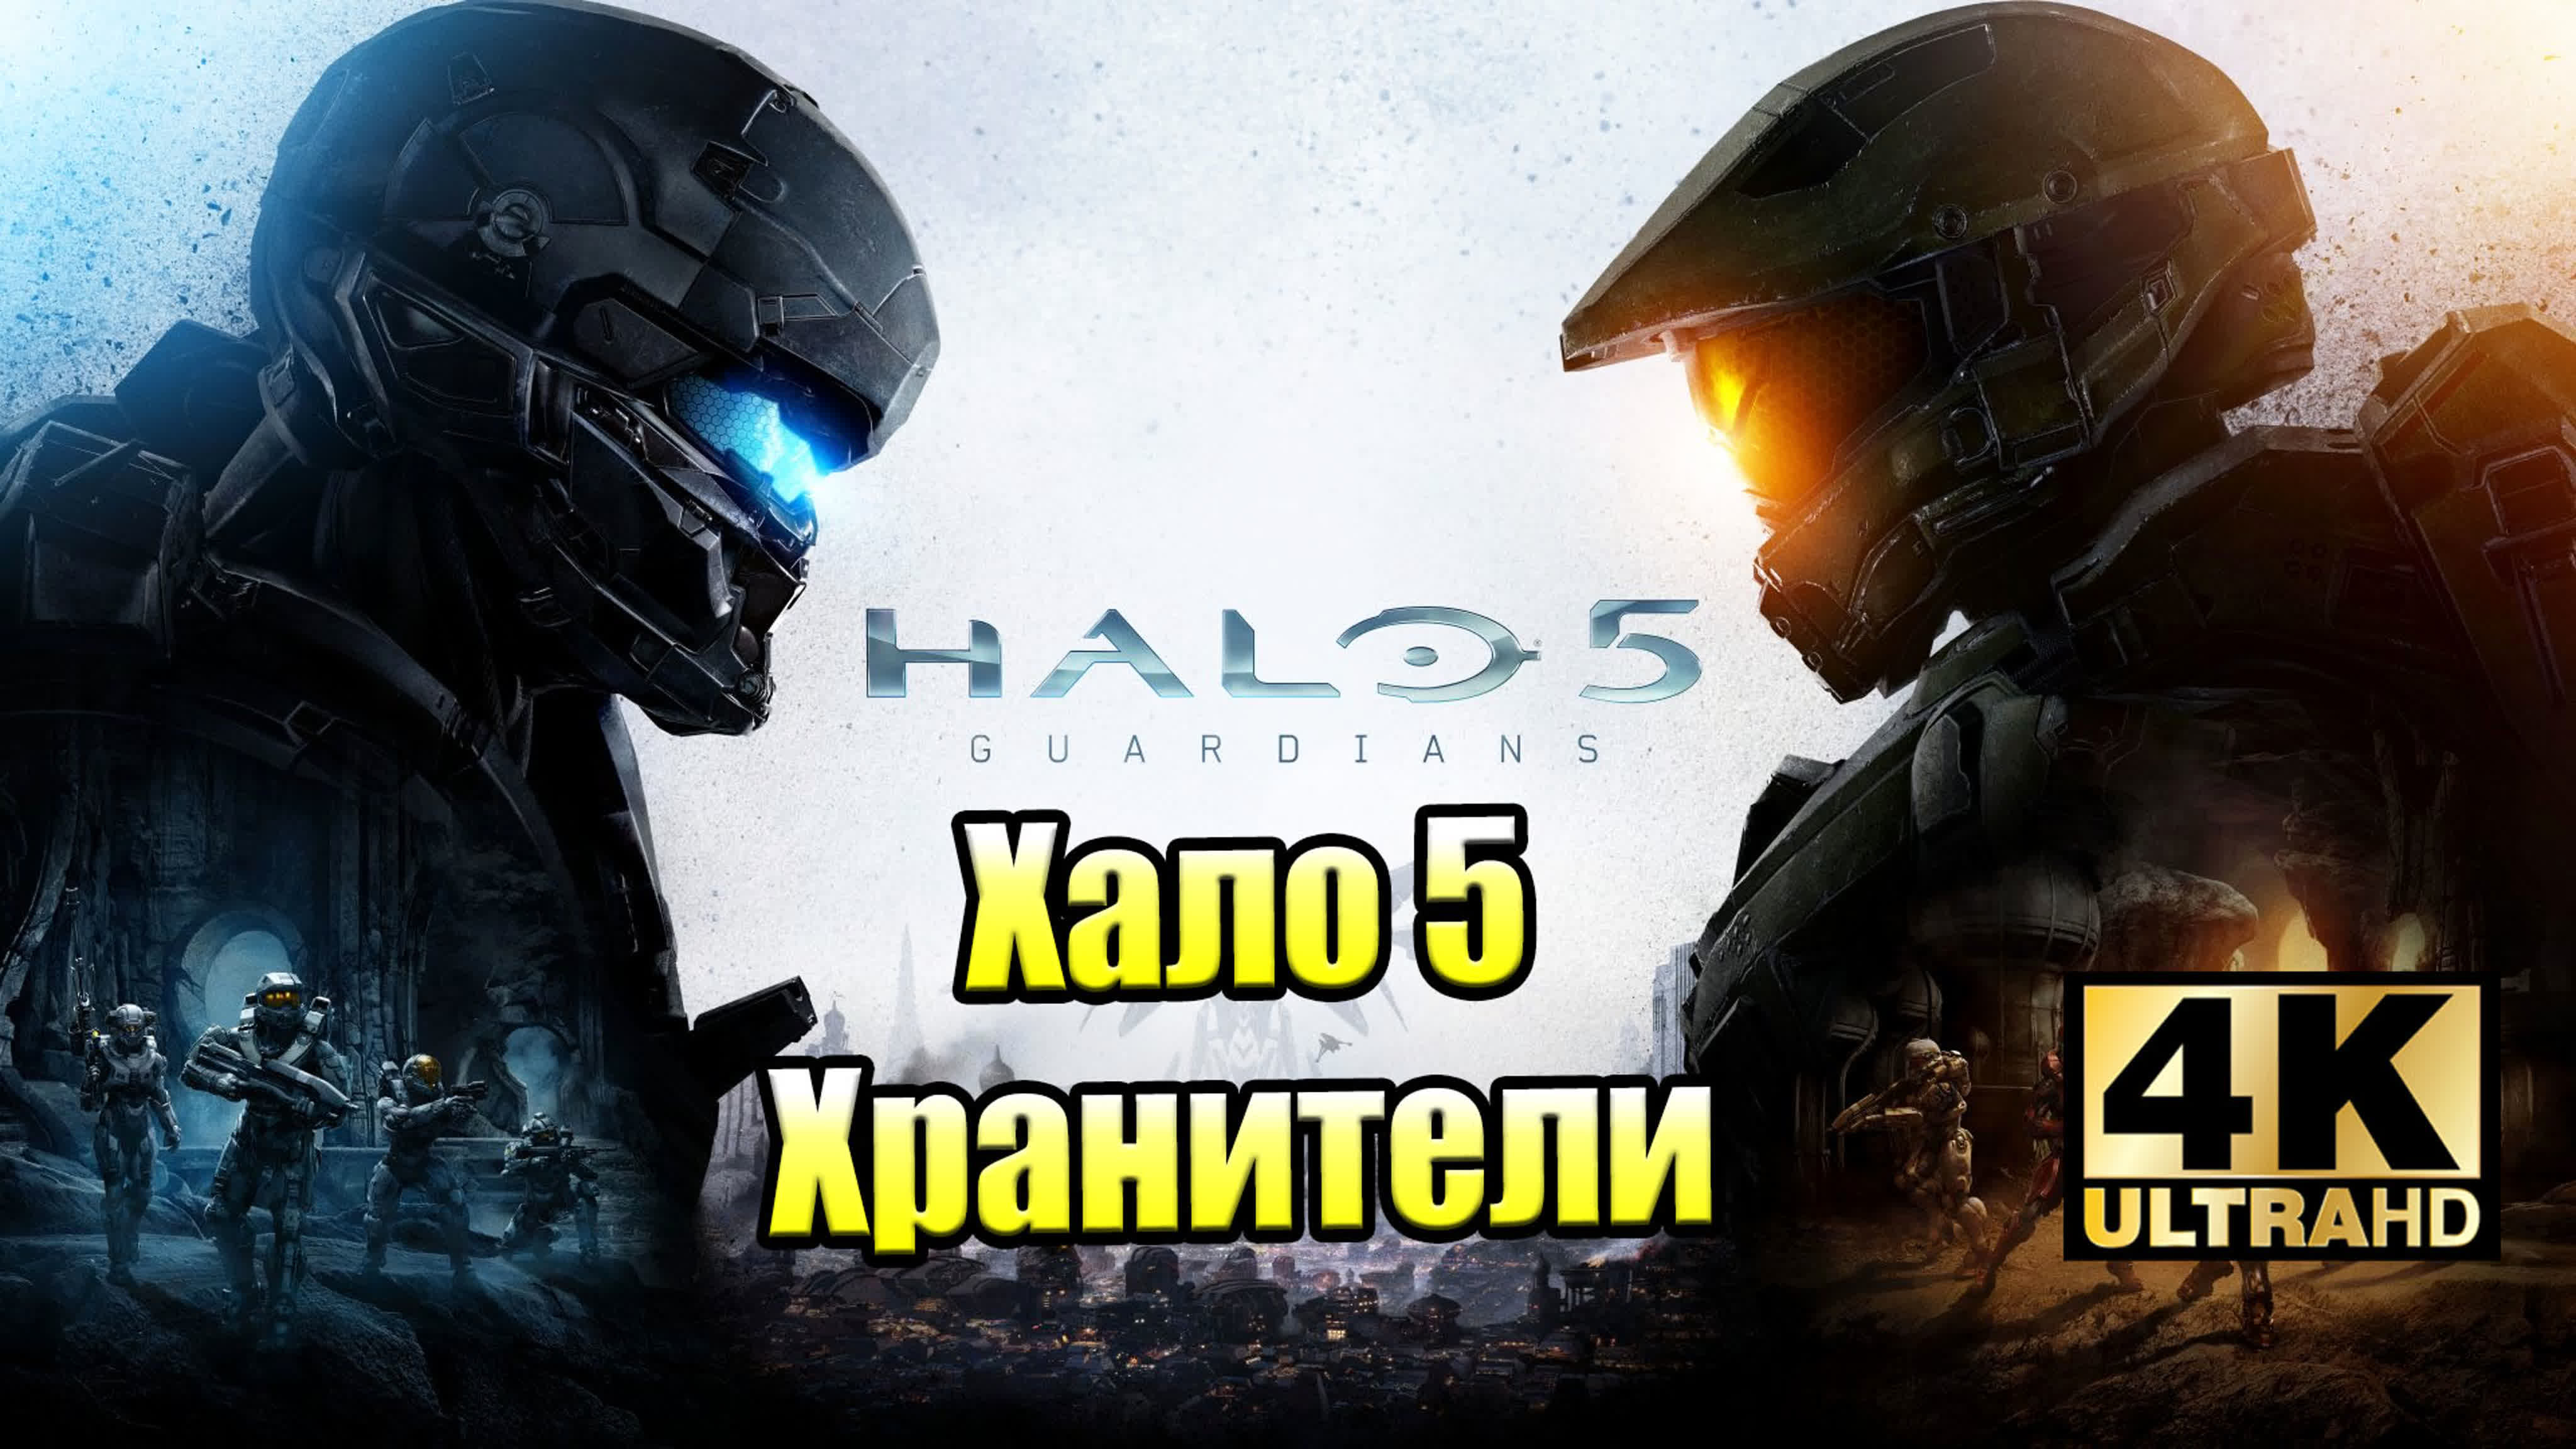 Halo 5 Guardians (XSX)